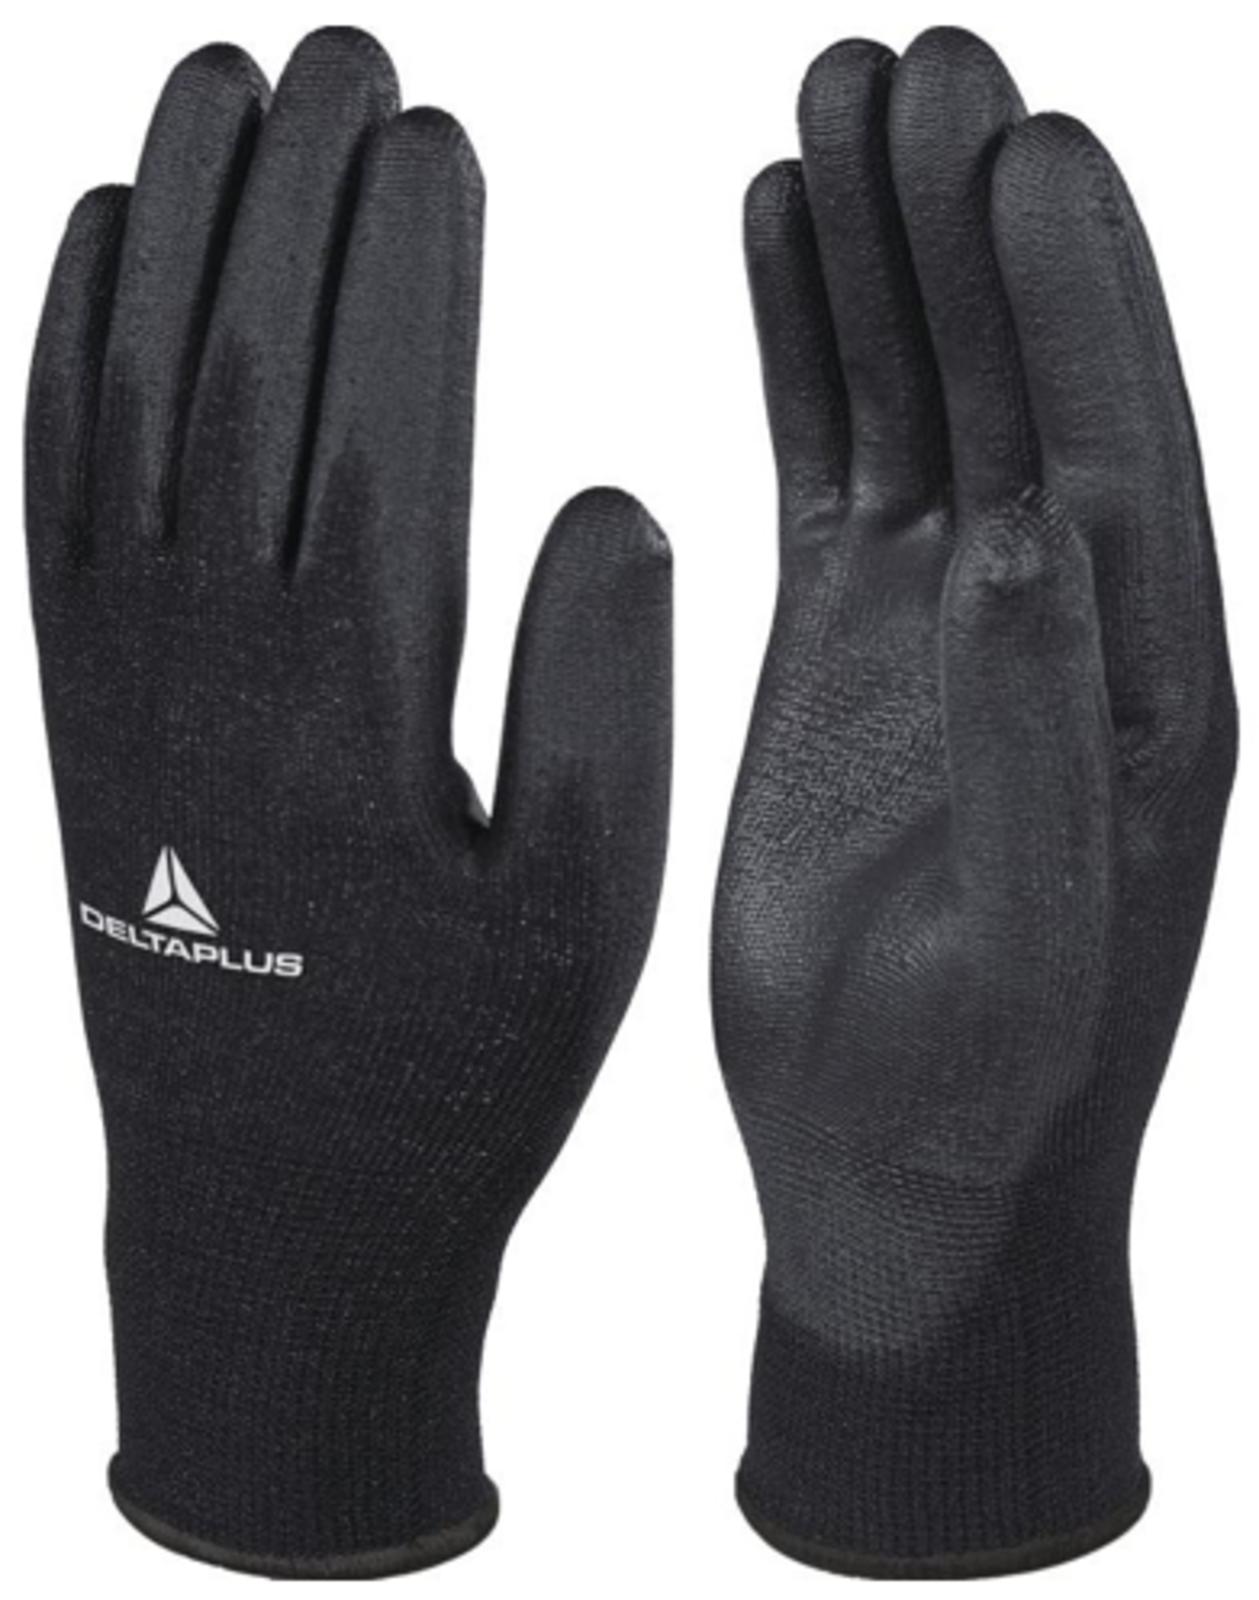 Pracovné rukavice Delta Plus VE702PN - veľkosť: 9/L, farba: čierna